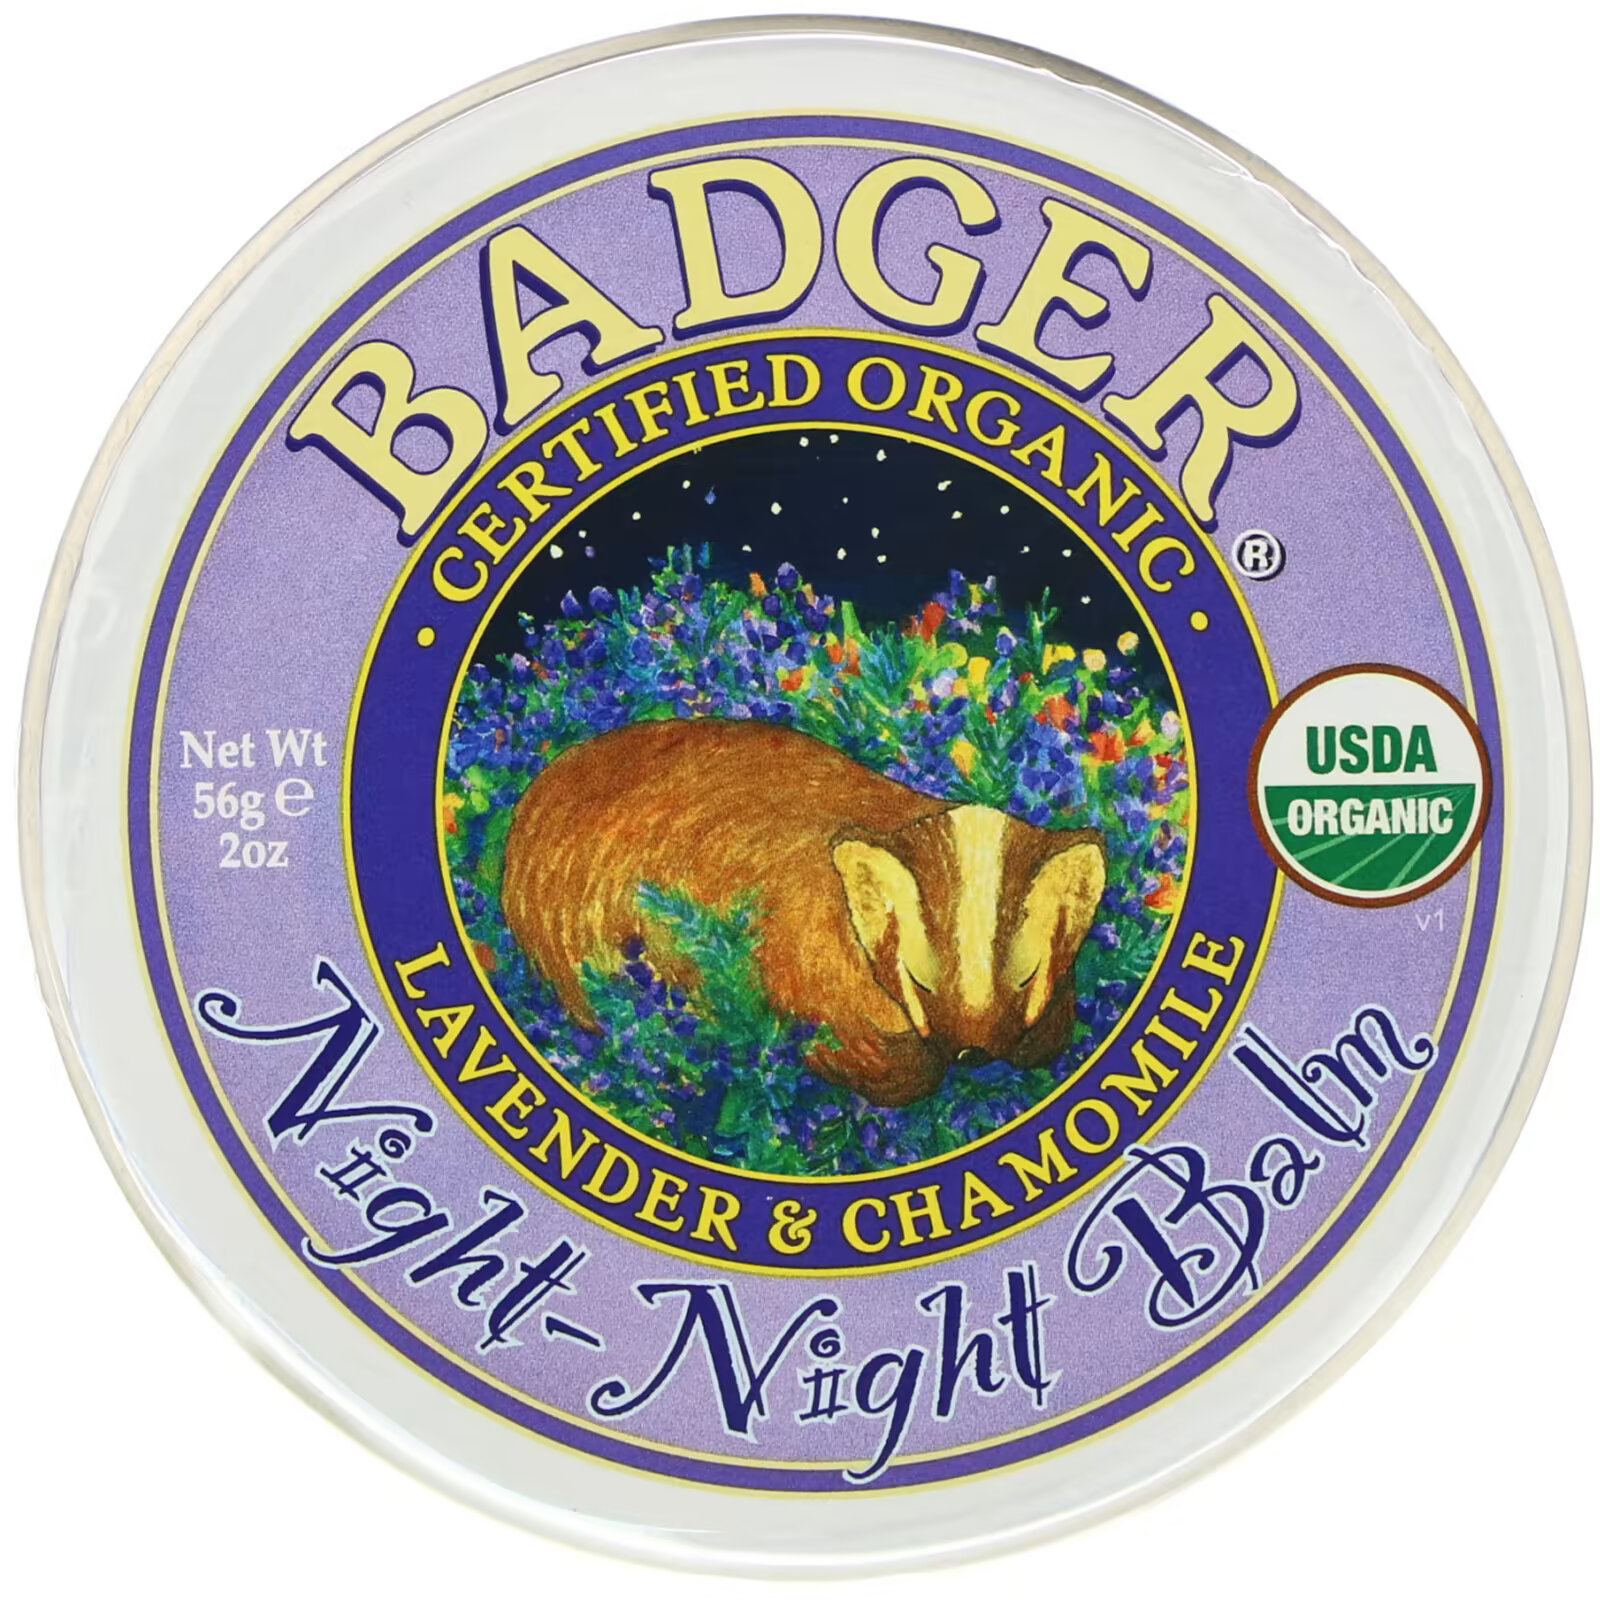 Badger Company, Organic, бальзам ночь-ночь, лаванда и ромашка, 2 унции (56 г) badger company органический бальзам после загара голубая пижма и лаванда 56 г 2 унции